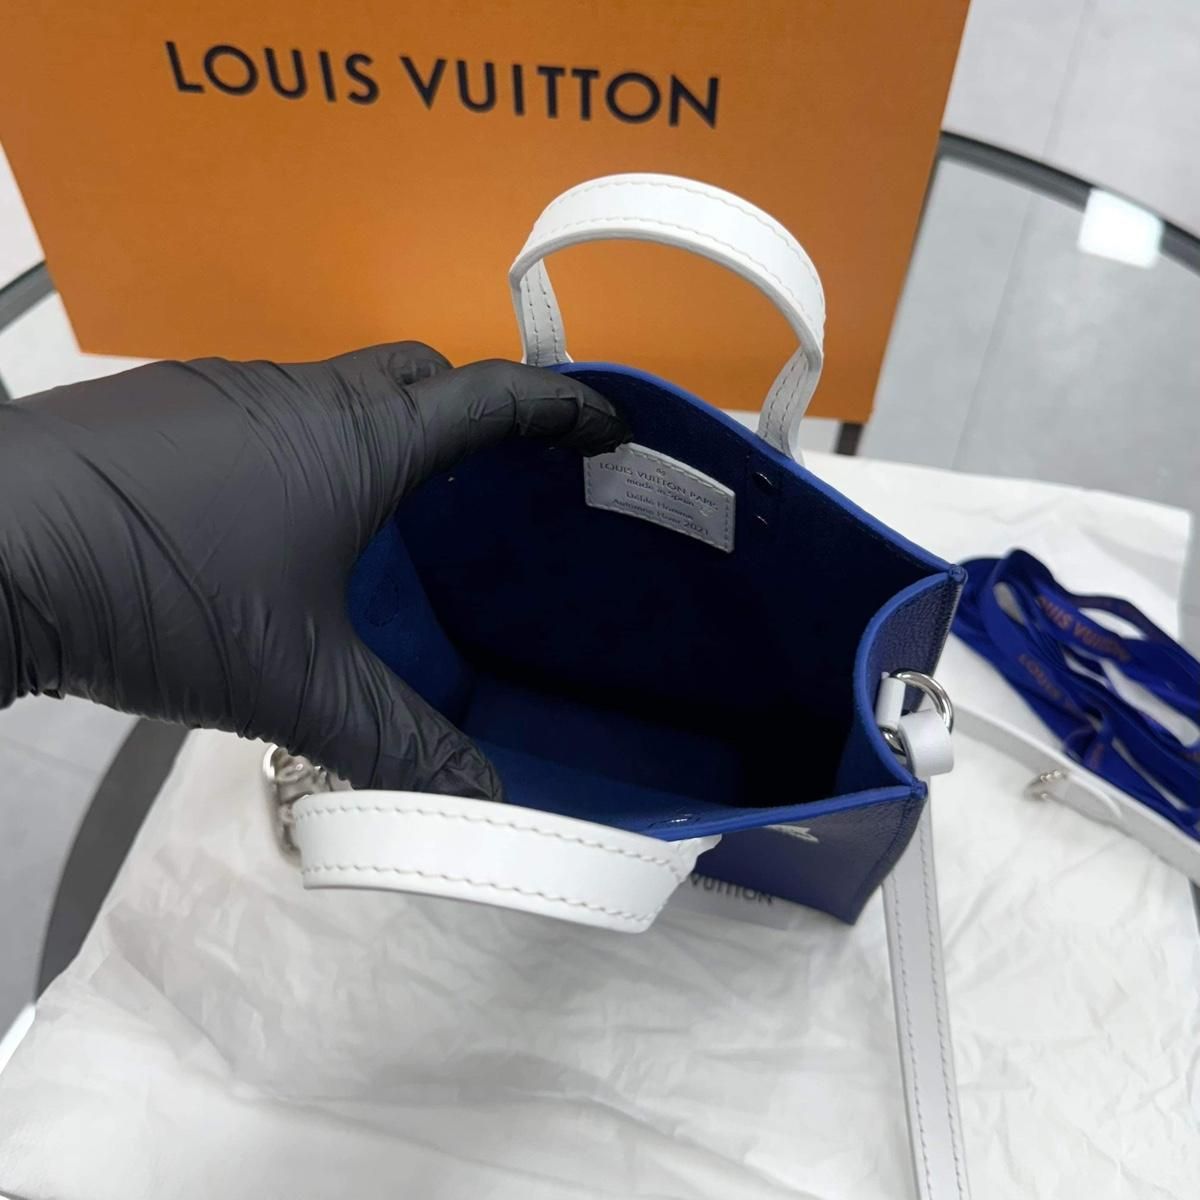 34,560円Louis Vuitton(ルイヴィトン) エブリデイ サックプラ クロスバッグ